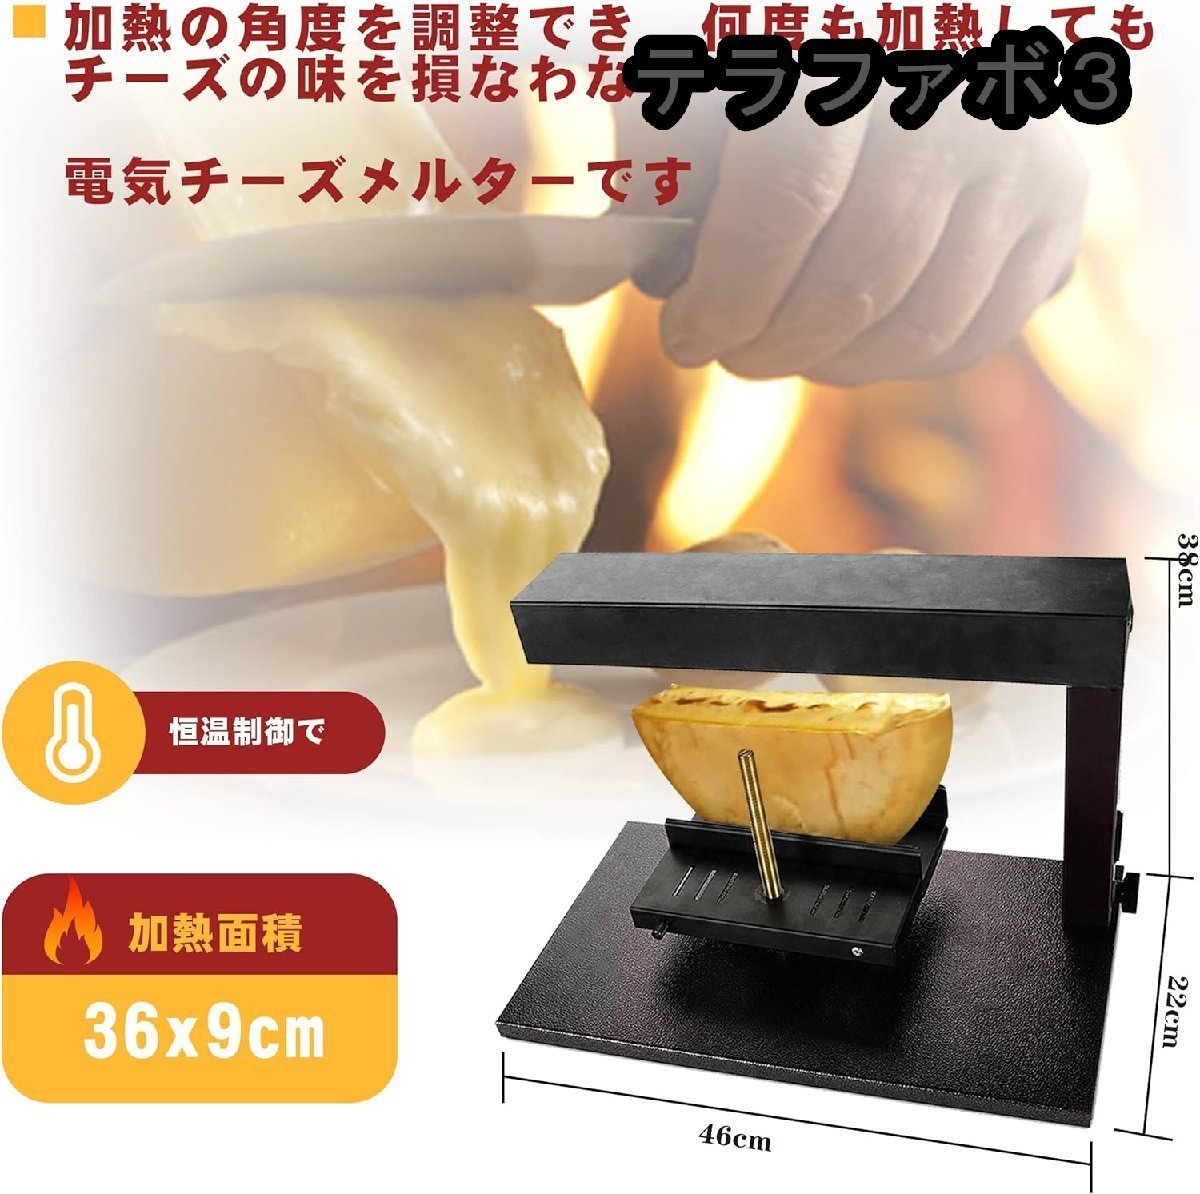 電気チーズメルター急速加熱 750W チーズヒーター チーズ加熱機 チーズの加熱・焙煎 チーズ溶けツール 業務用 家庭用_画像3